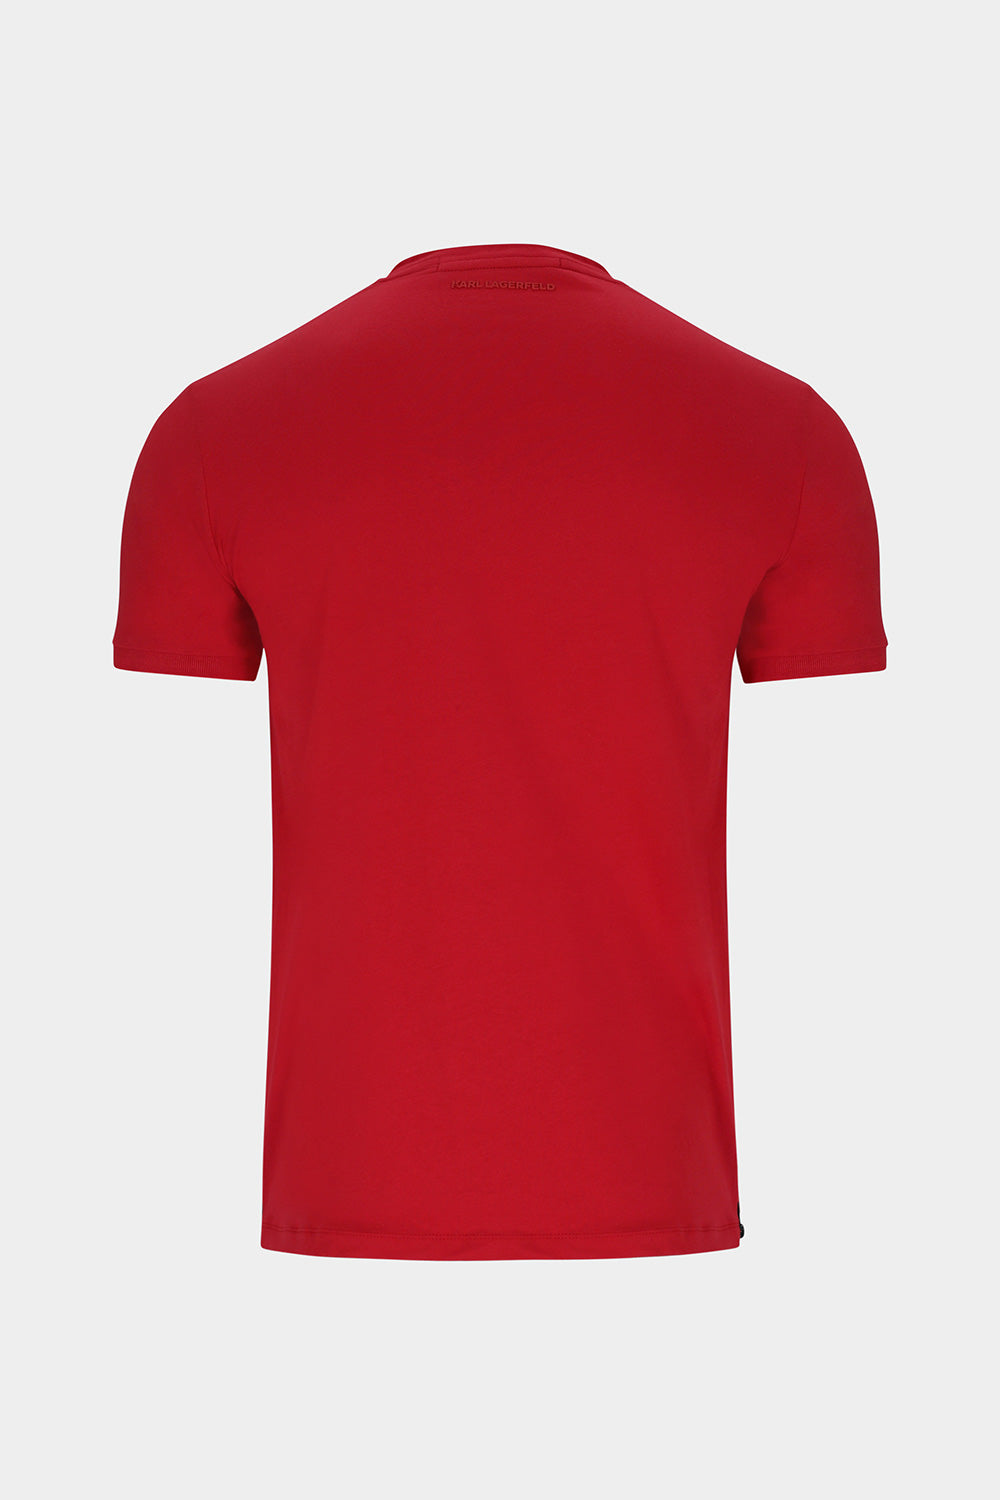 חולצה לגברים בצבע אדום KARL LAGERFELD KARL LAGERFELD Vendome online | ונדום .